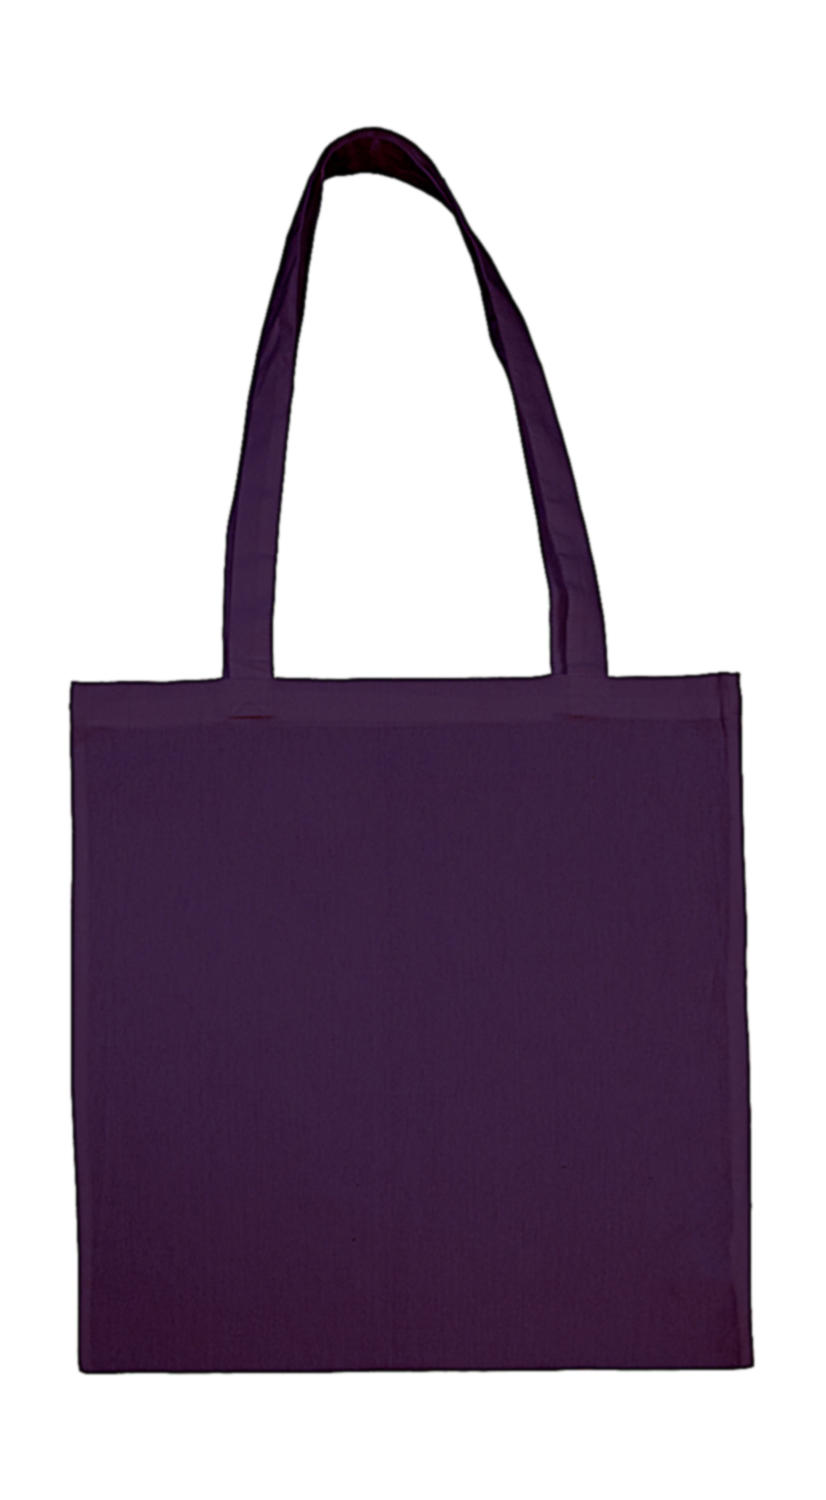  Cotton Bag LH in Farbe Purple